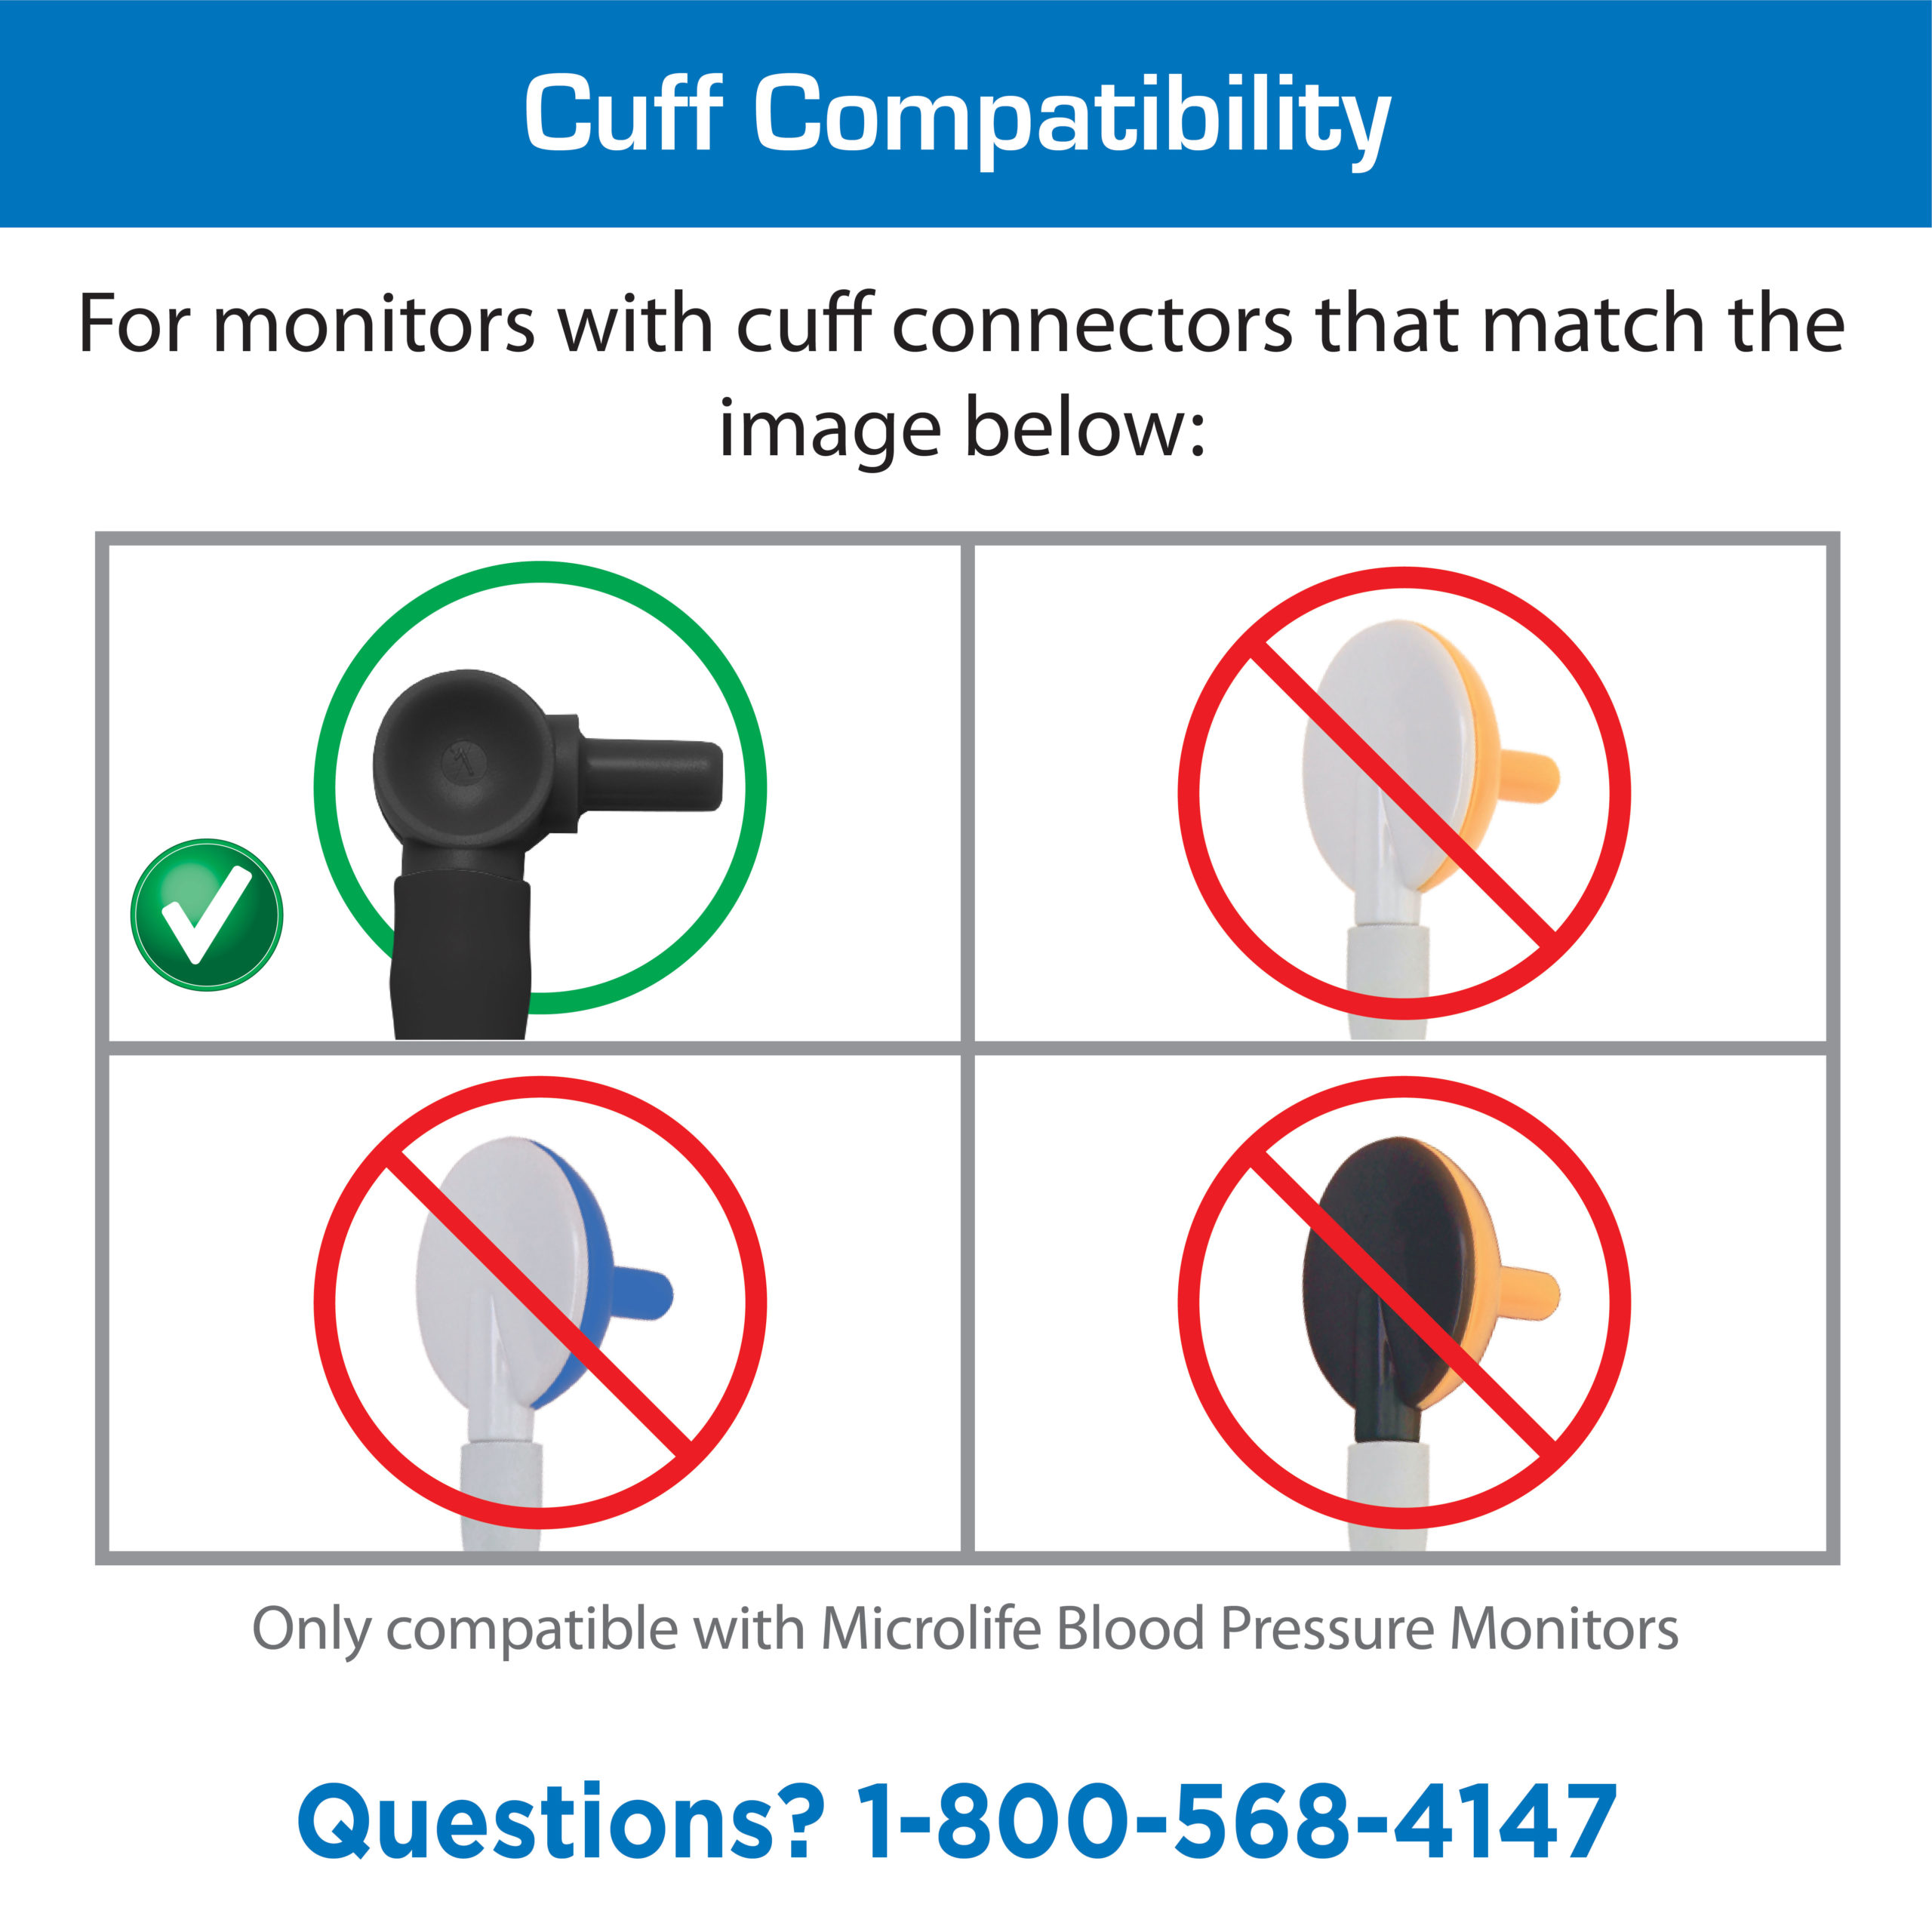 Cuff connectors